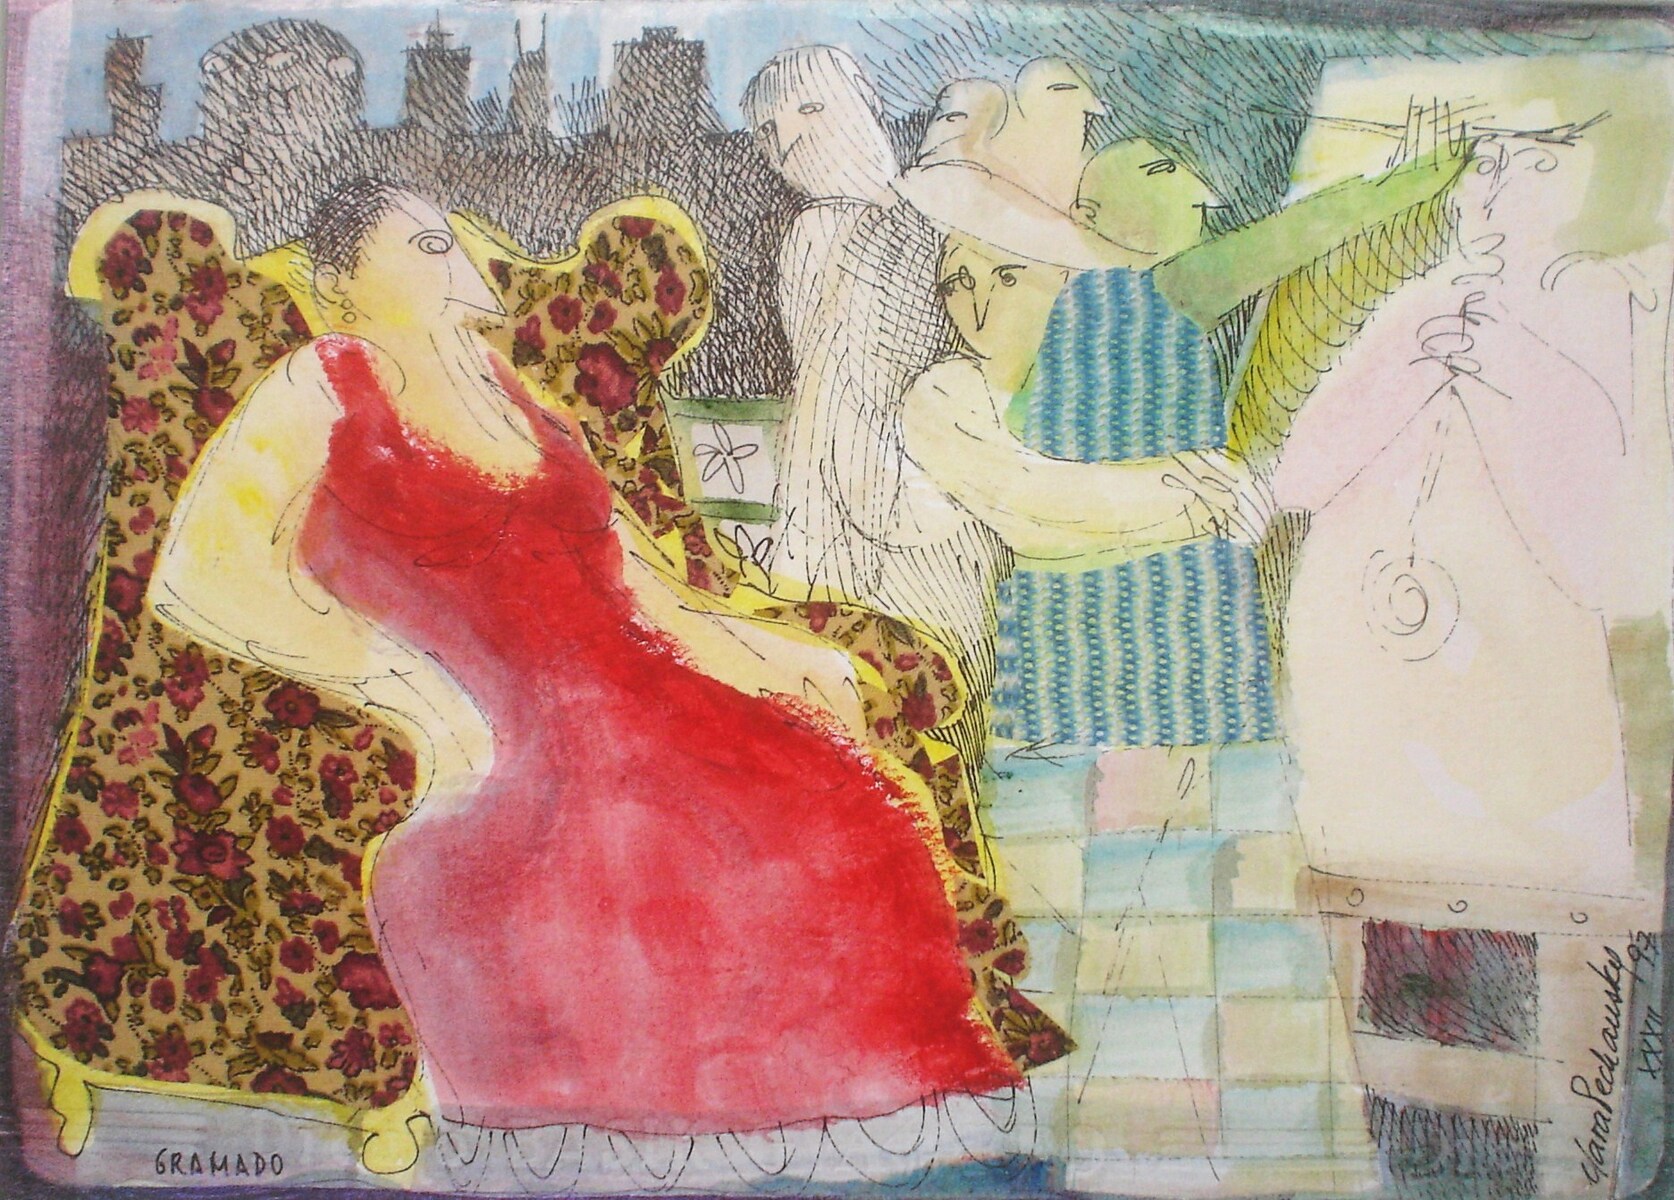 3123 - Clara Pechansky, 'Gramado', desenho técnica mista 23 x 32 cm, ass. dt. 1997